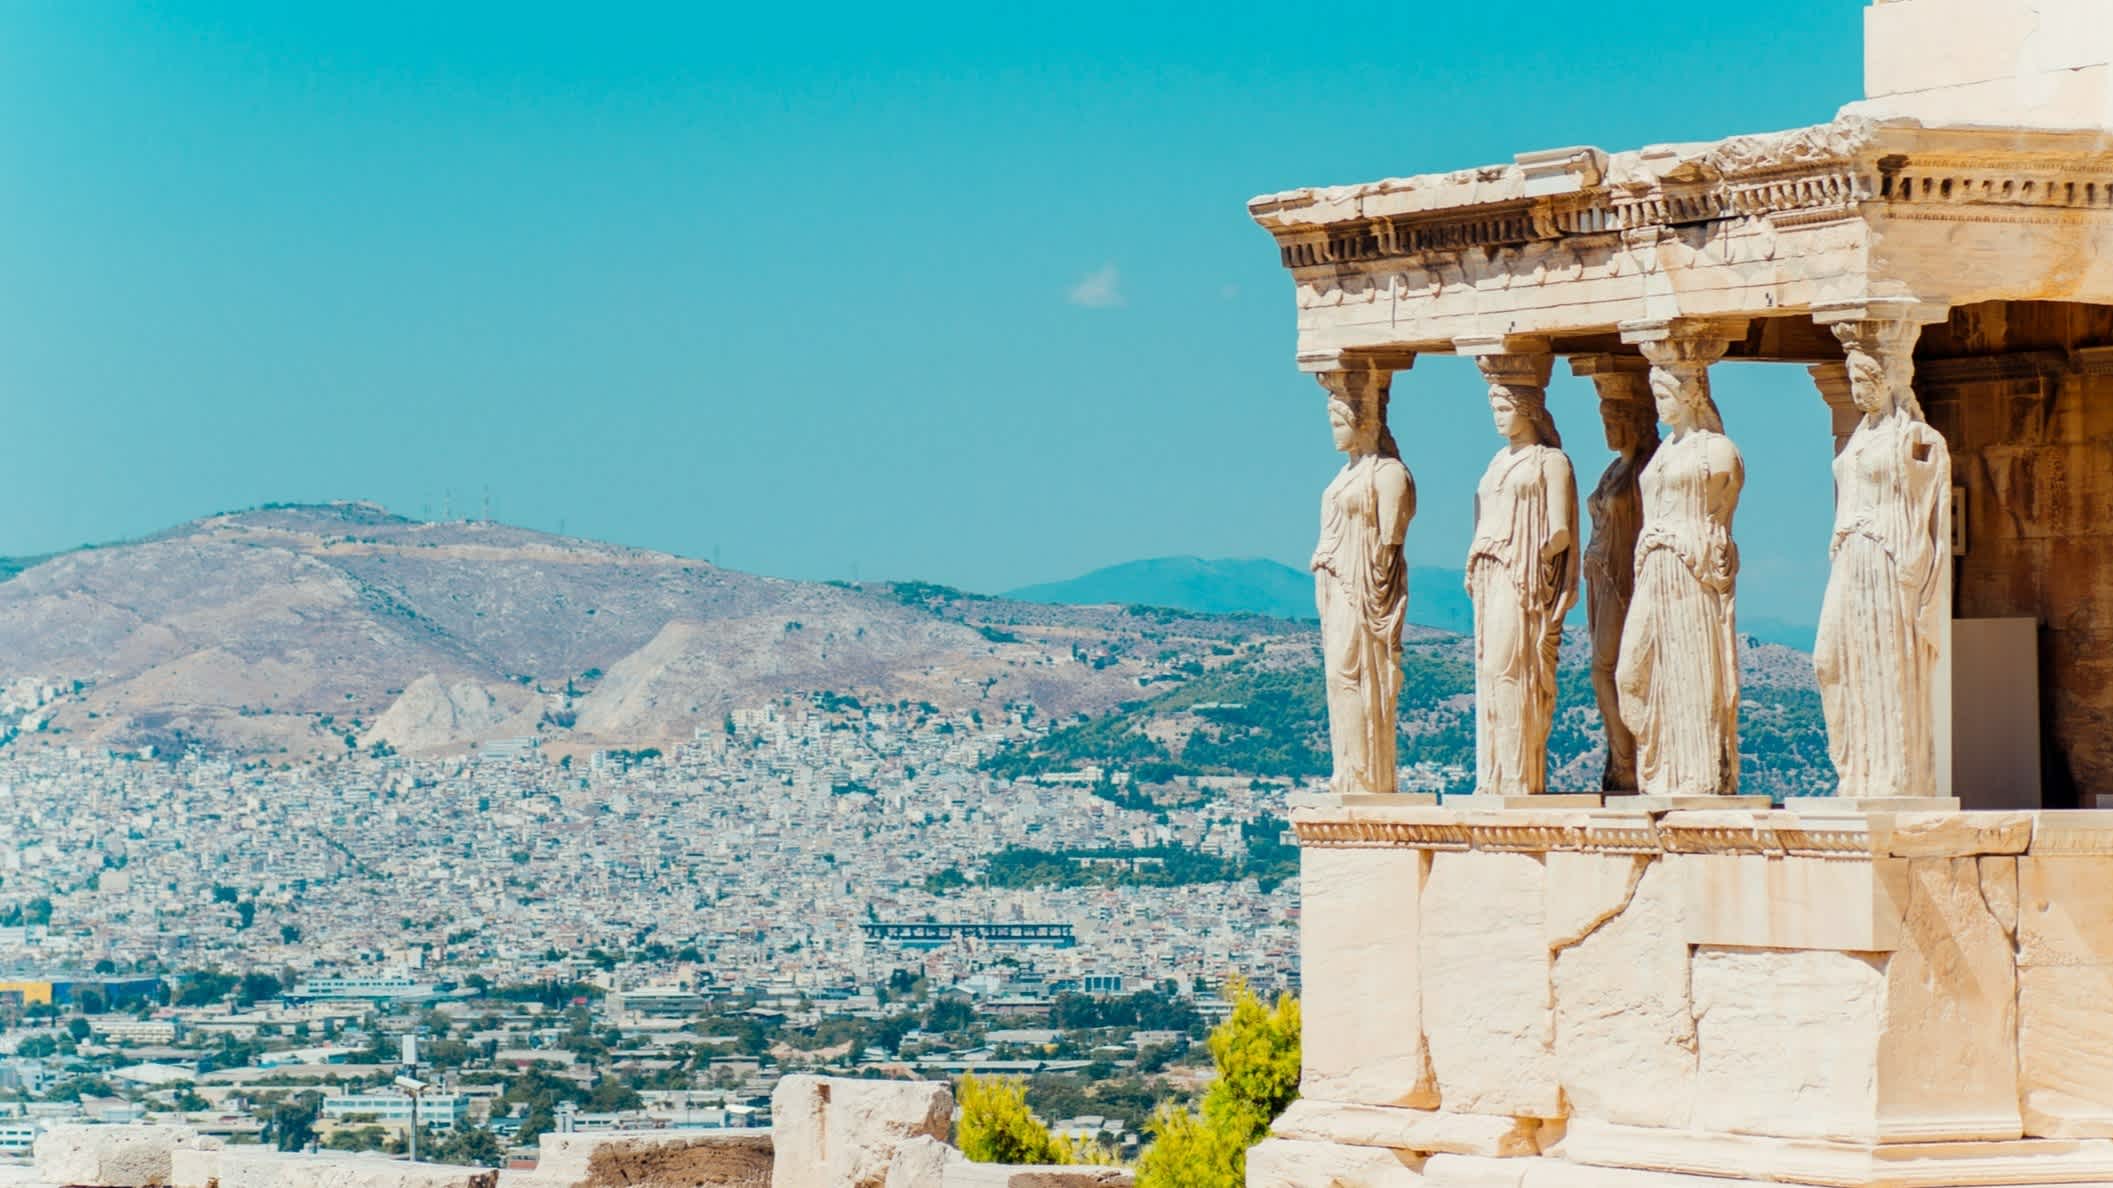 Ansicht des Erechtheion-Tempels in Athen, Griechenland.
